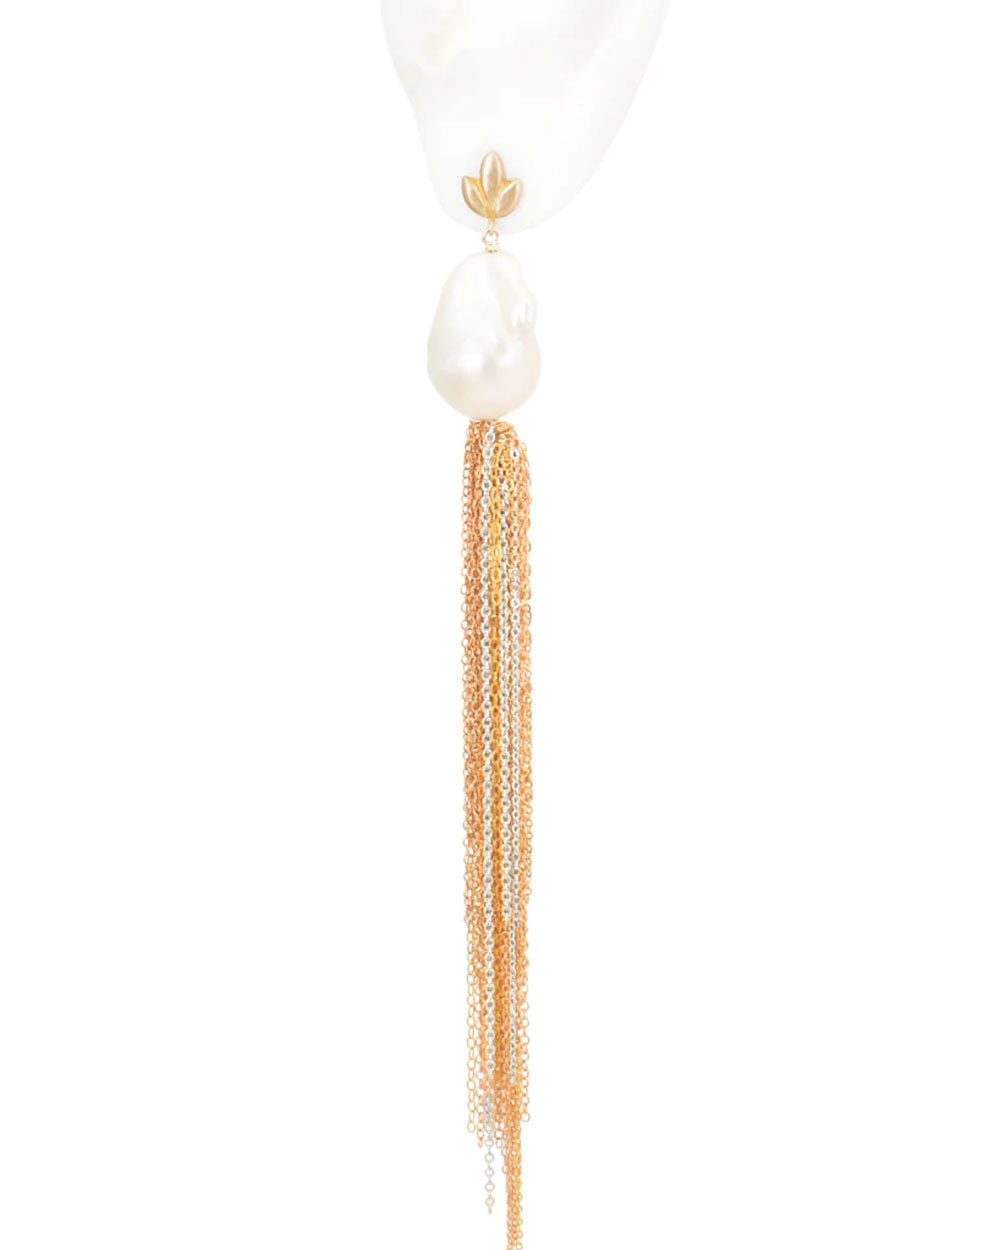 White Baroque Pearl Tassel Fringe Earrings